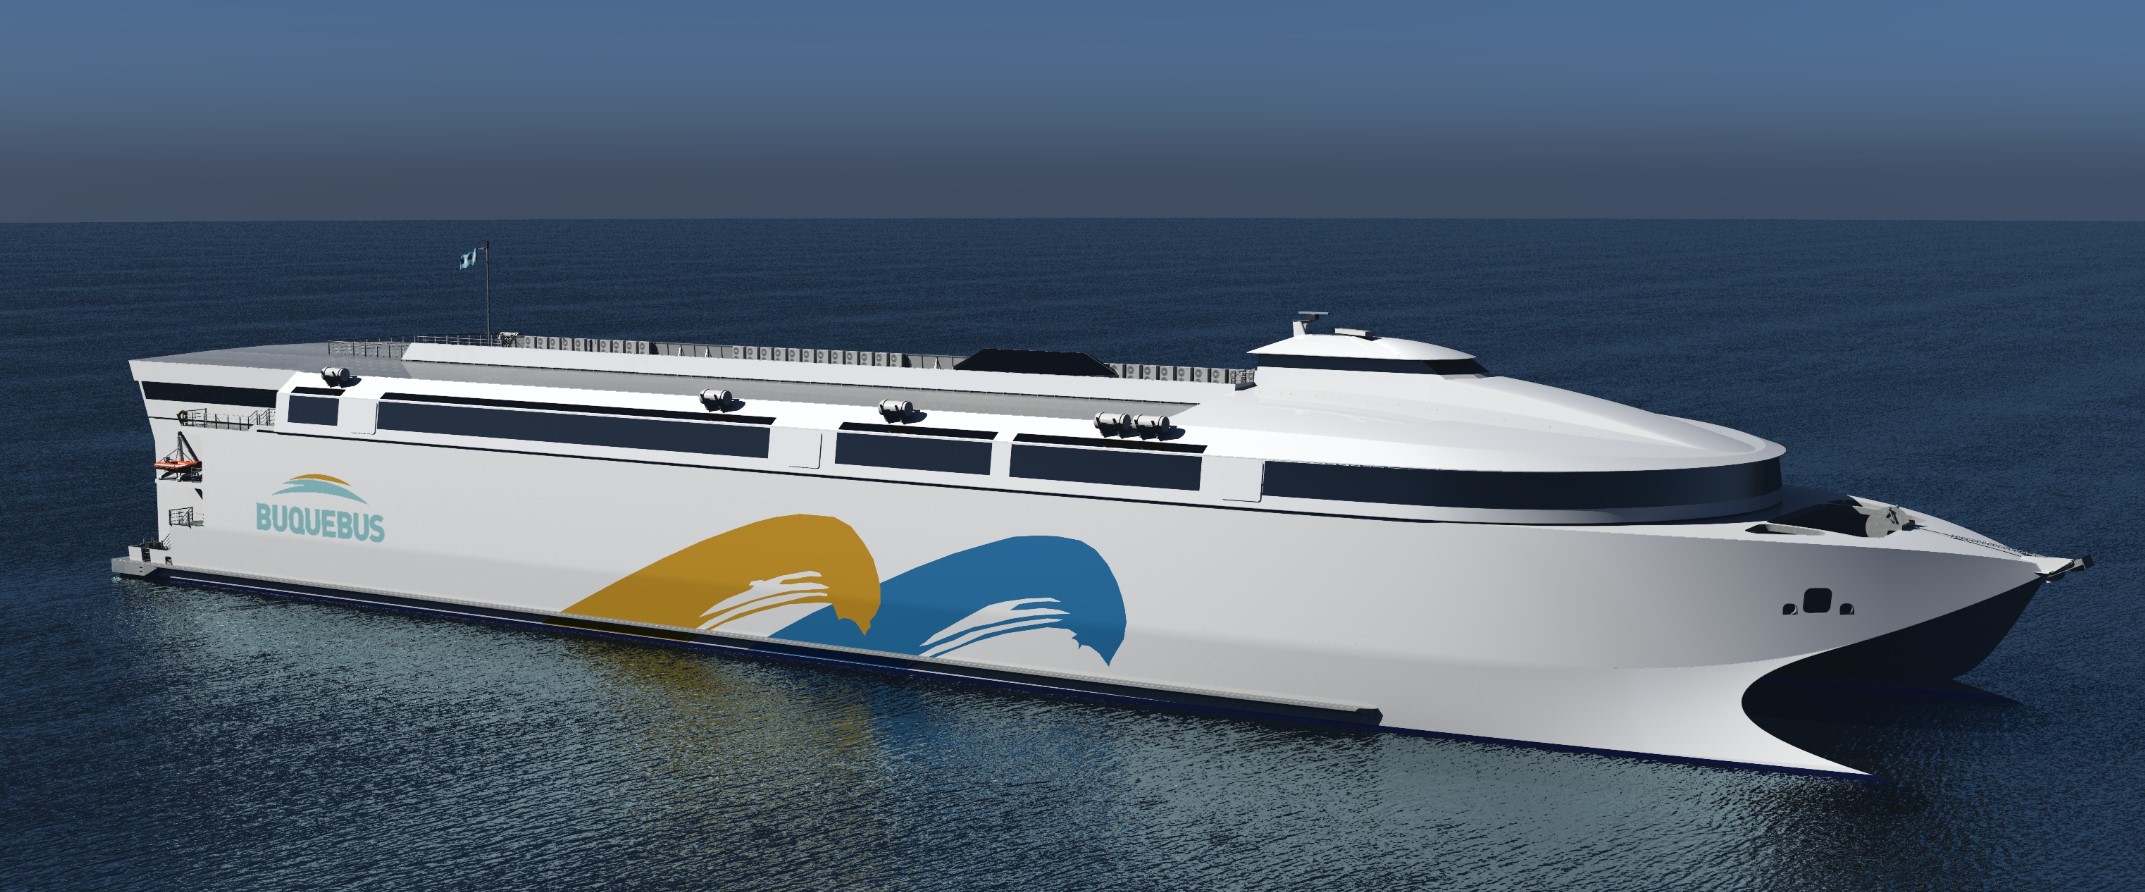 Le plus grand ferry électrique du monde arrive bientôt, et il peut accueillir de nombreux passagers